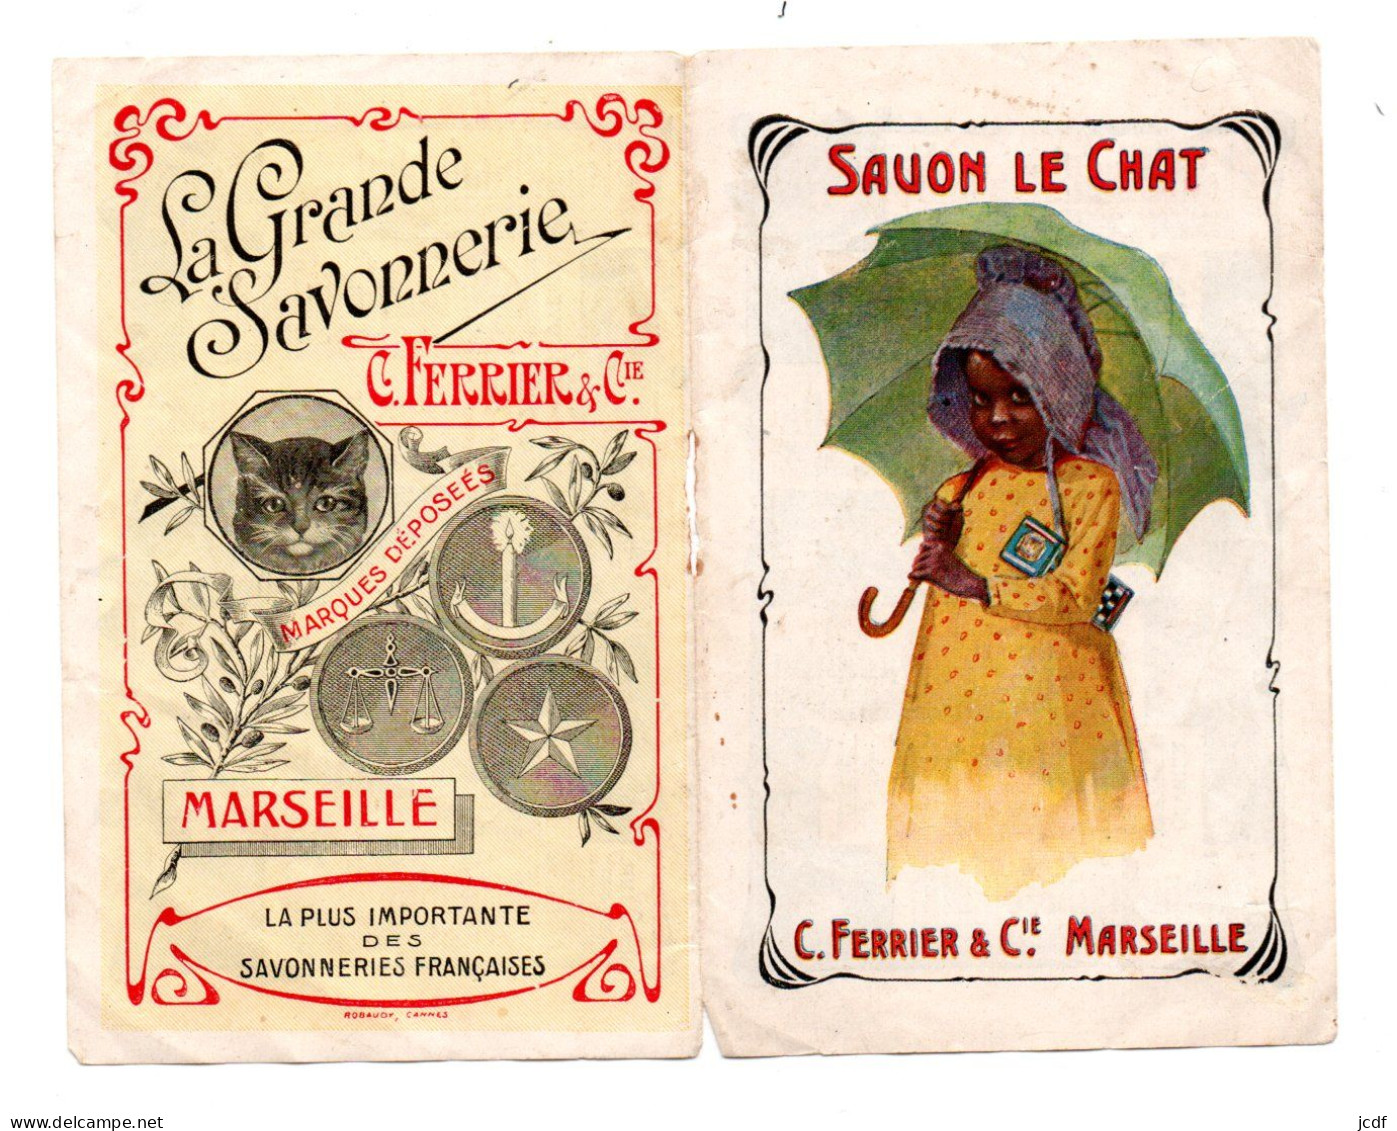 13 MARSEILLE - La Grande Savonnerie Ferrier - Savon Le Chat - Calendrier 1910 - Kleinformat : 1901-20